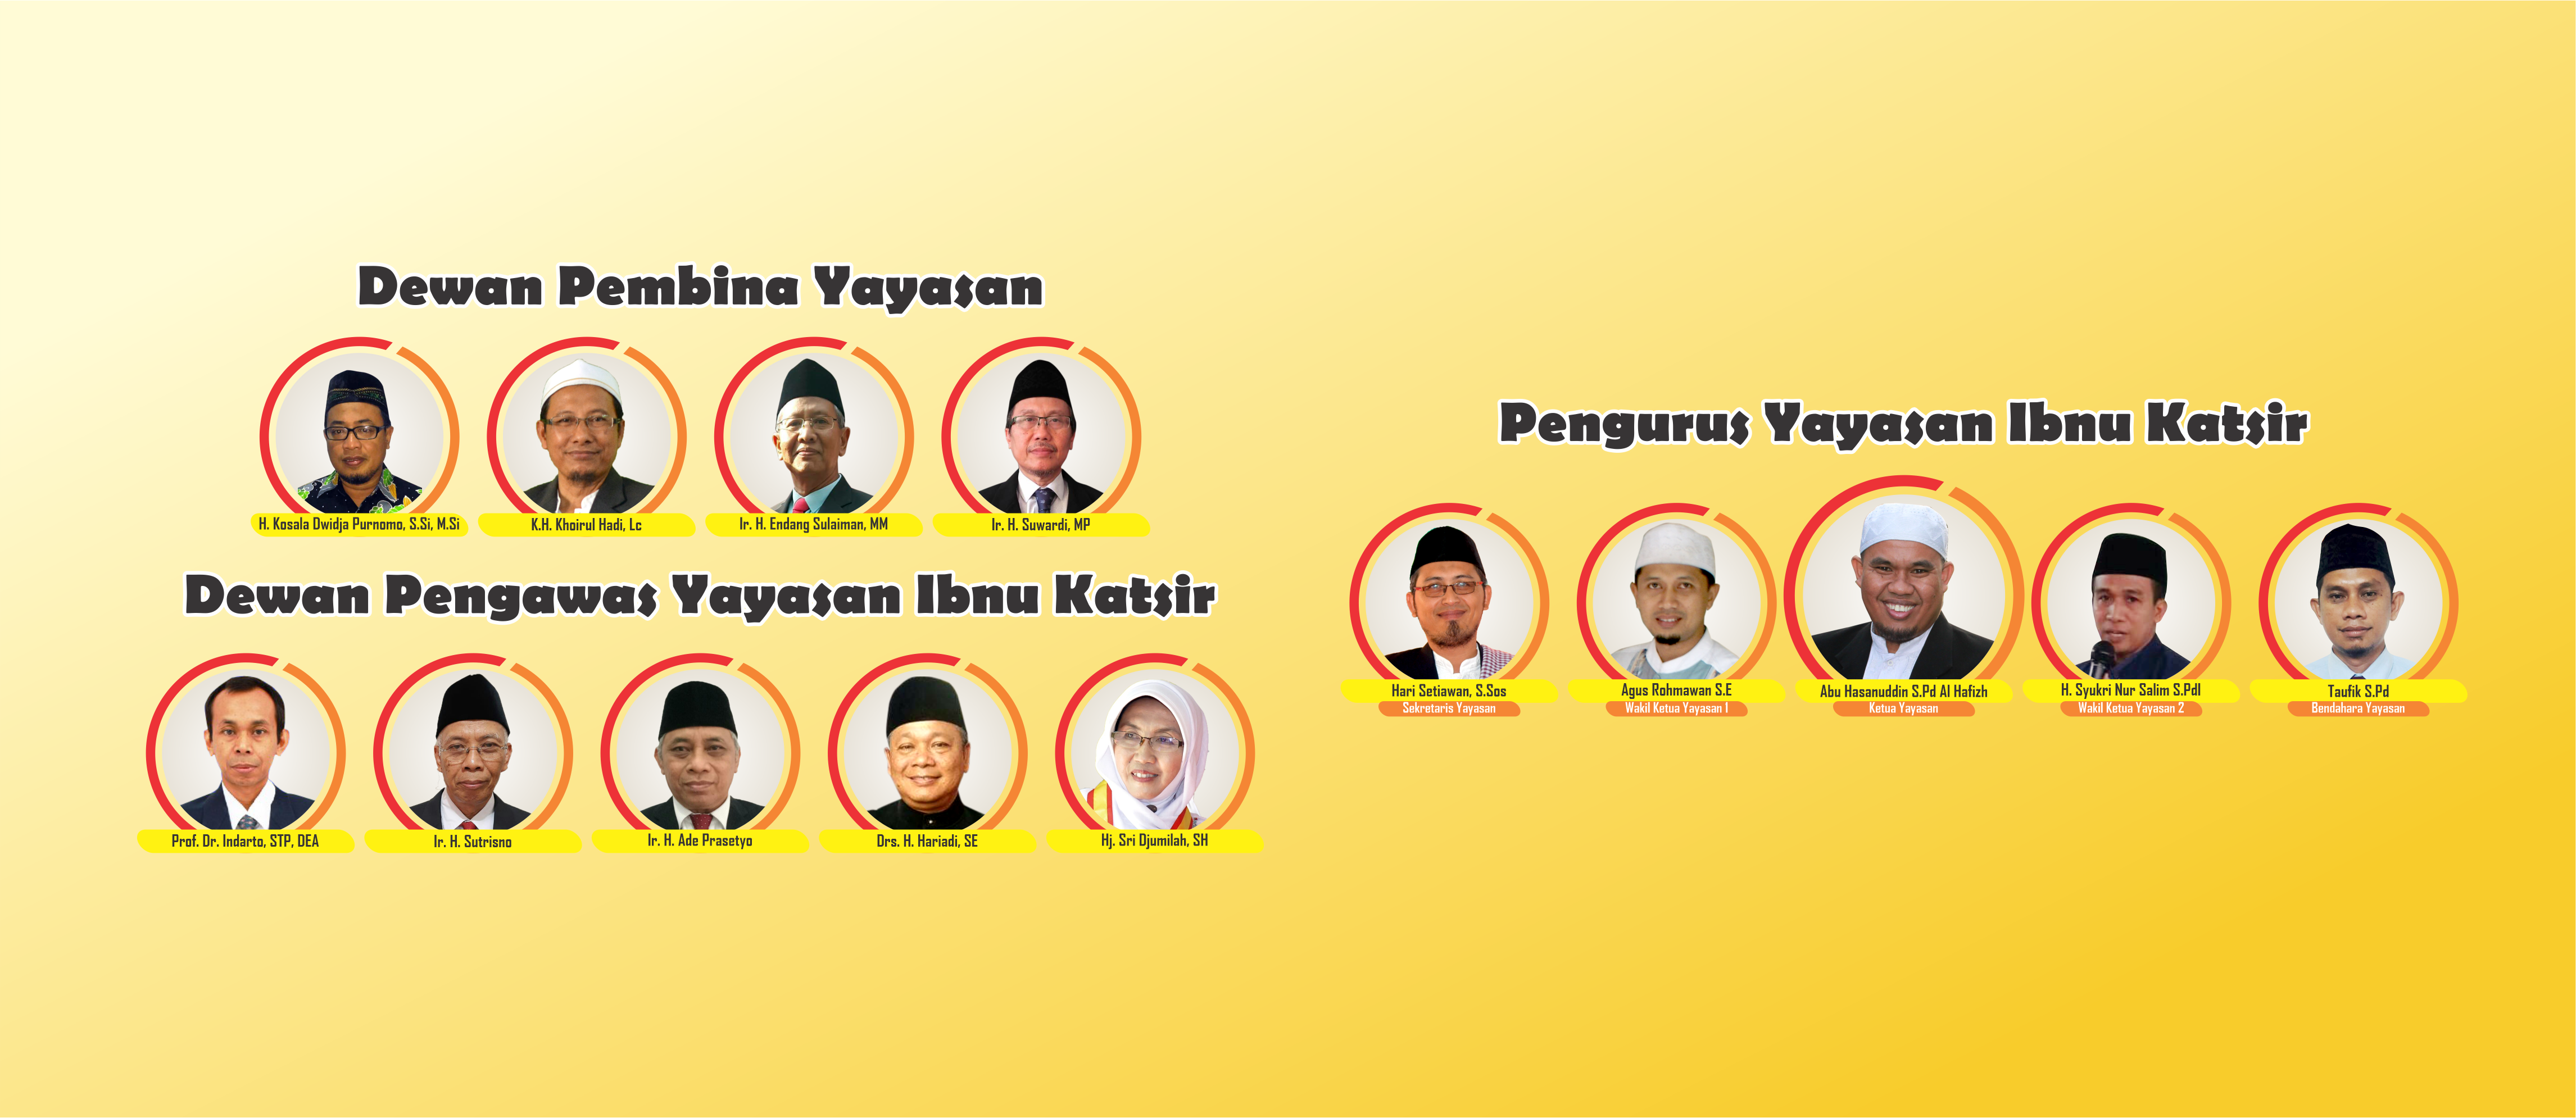 Dewan Pembina, Pengawas dan Pengurus Yayasan Ibnu Katsir